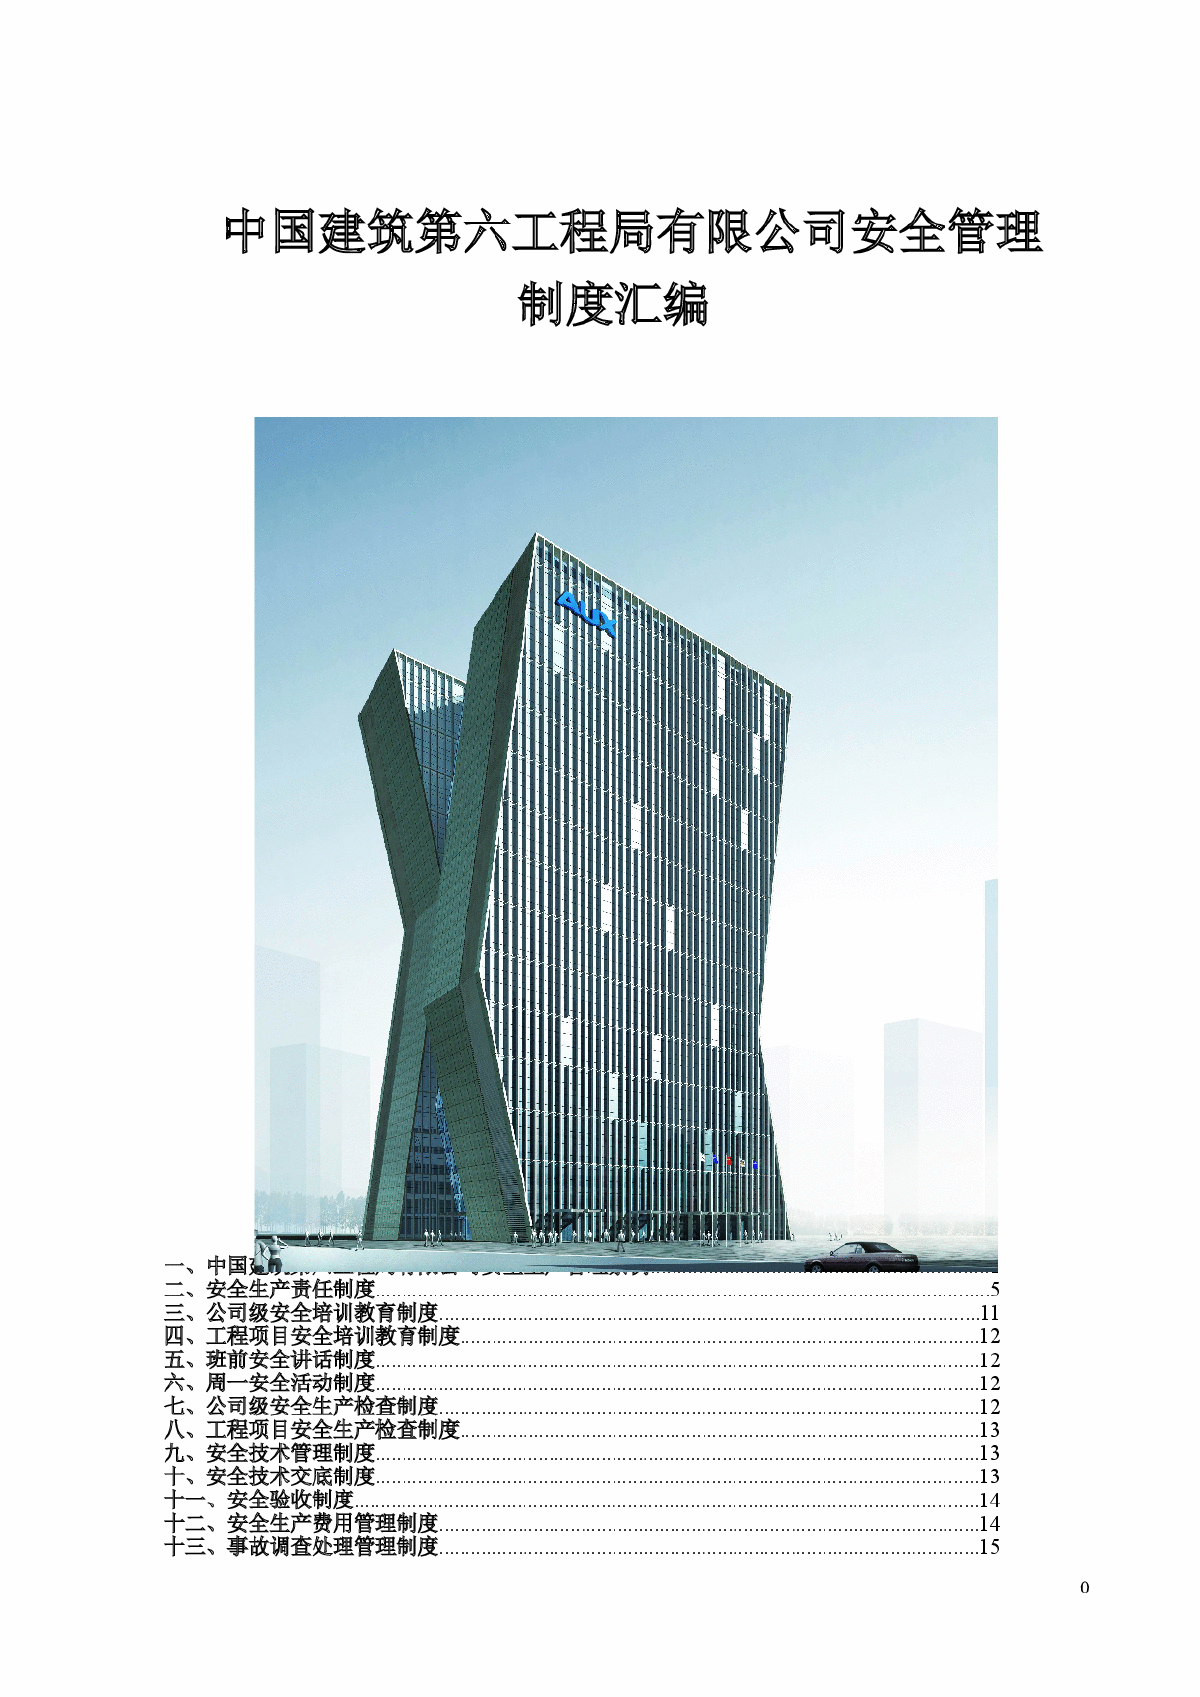 中国建筑某有限公司安全管理